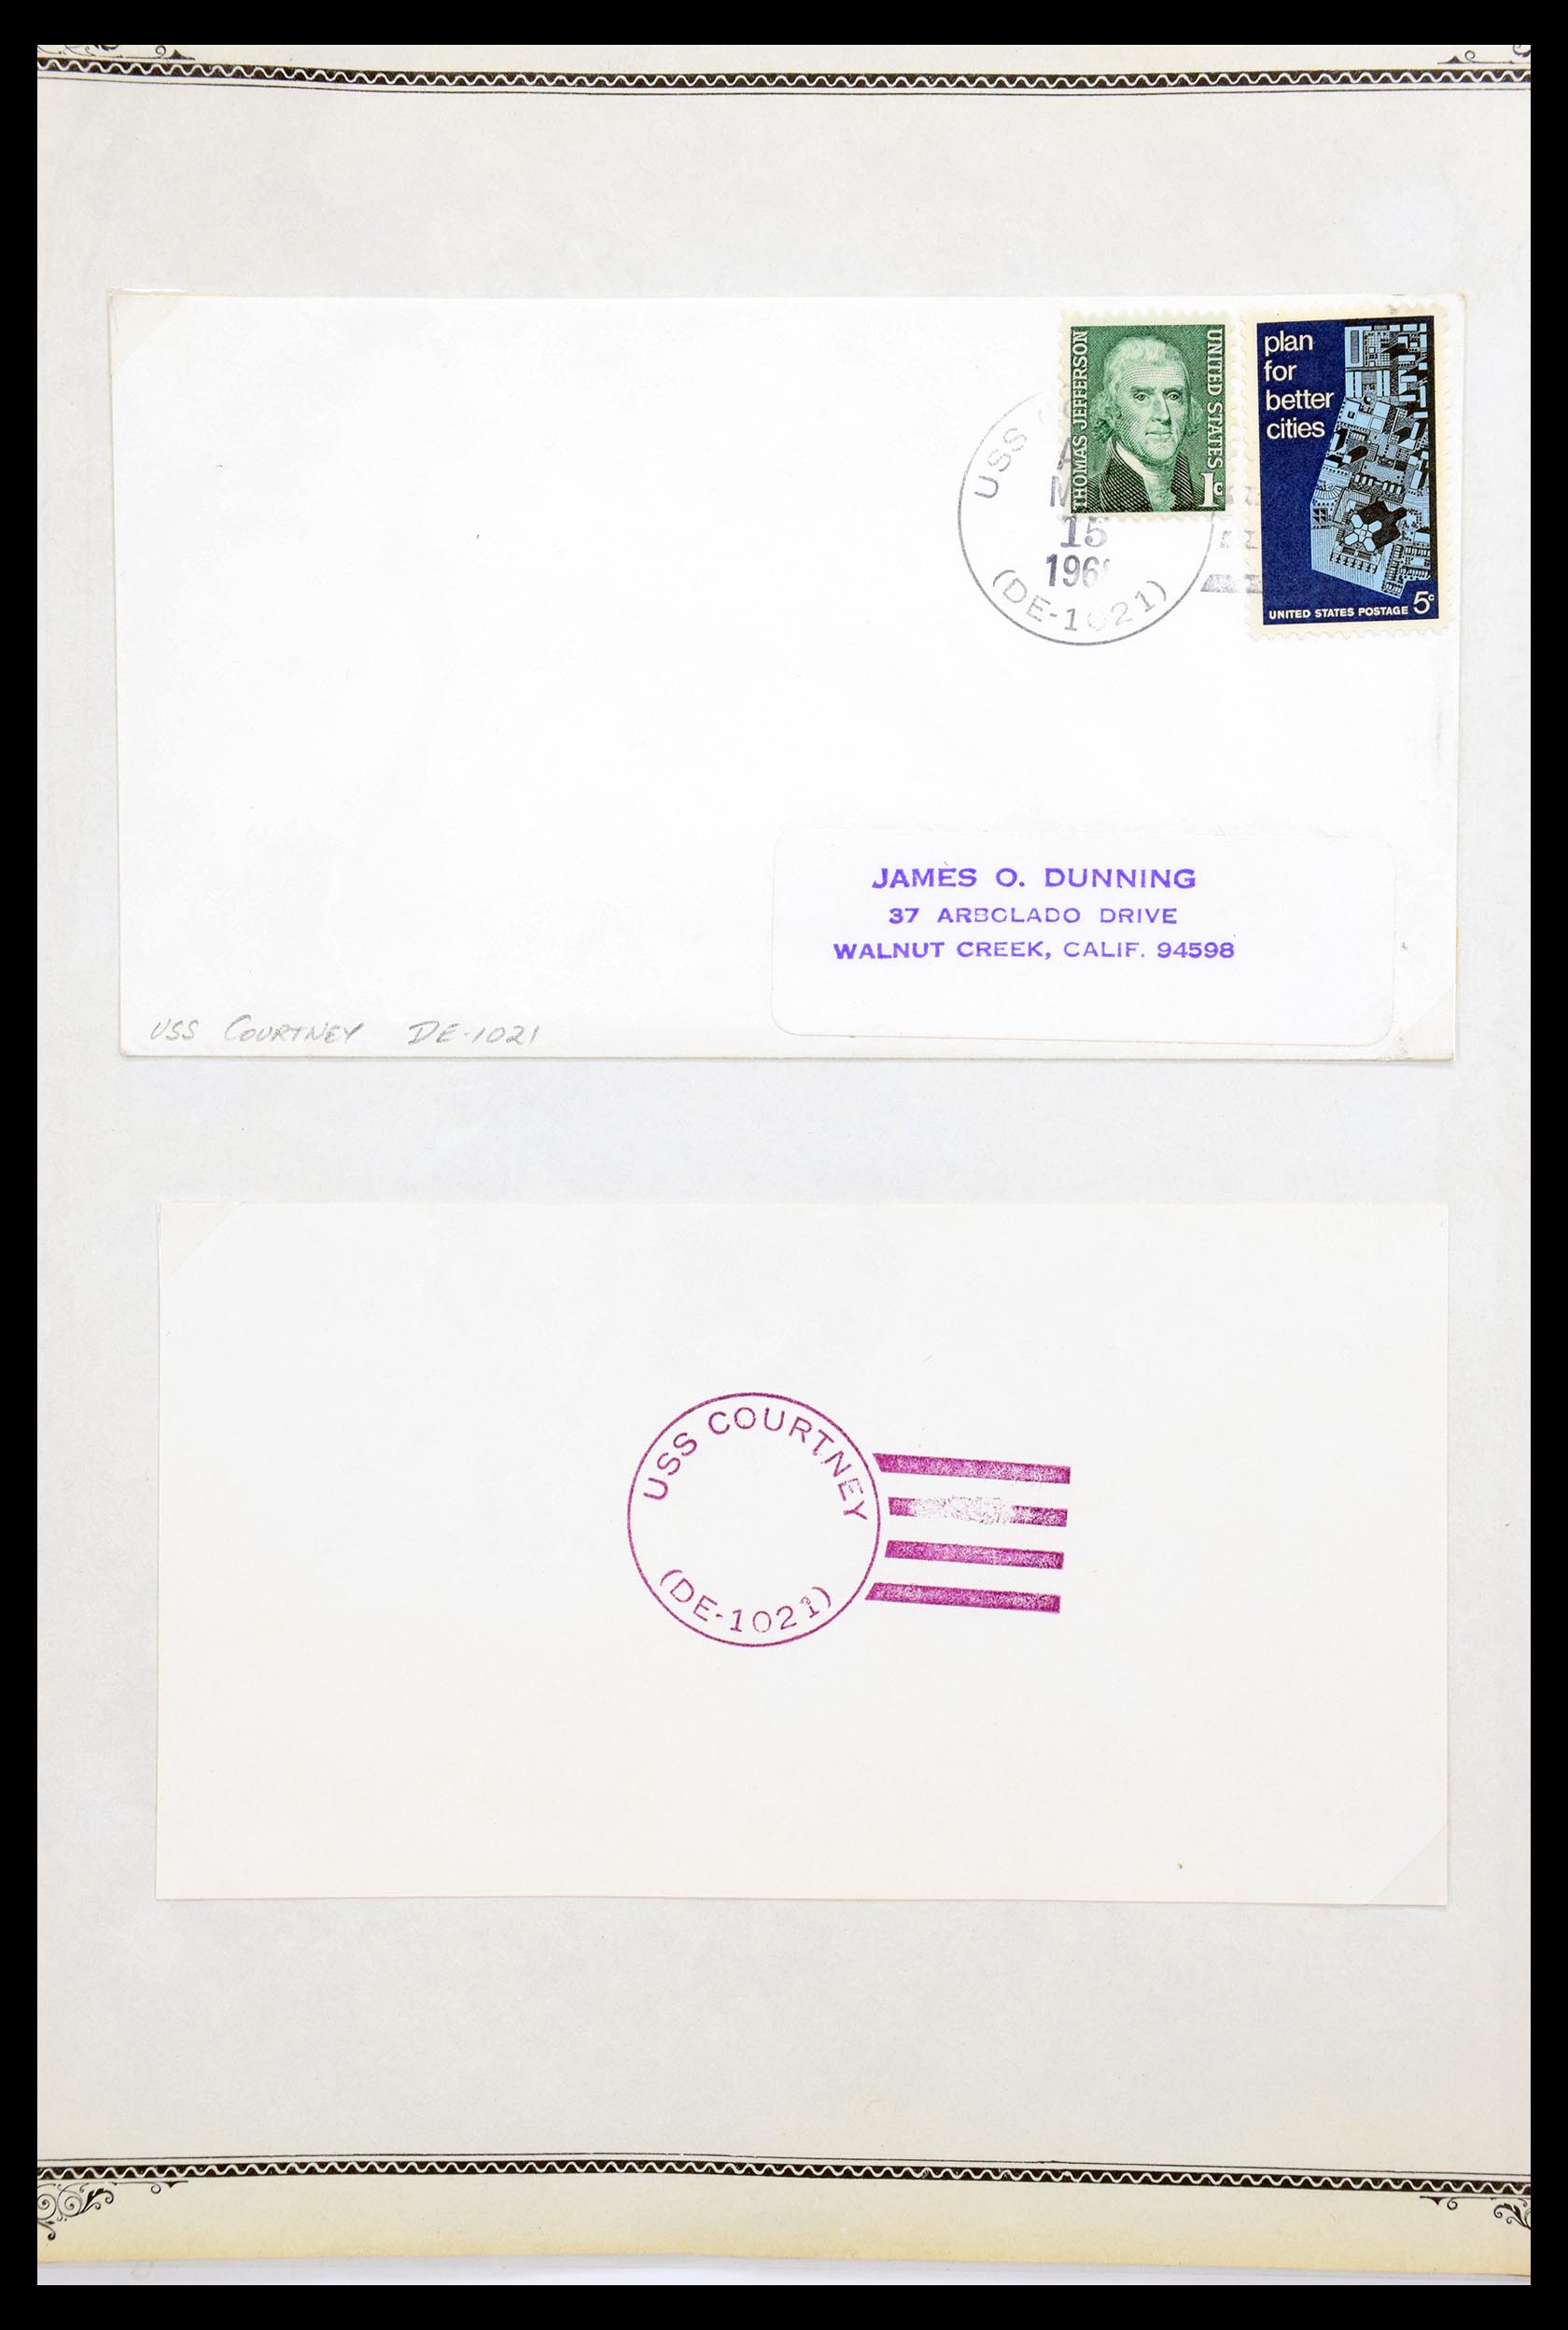 30341 071 - 30341 USA scheepspost brieven 1930-1970.